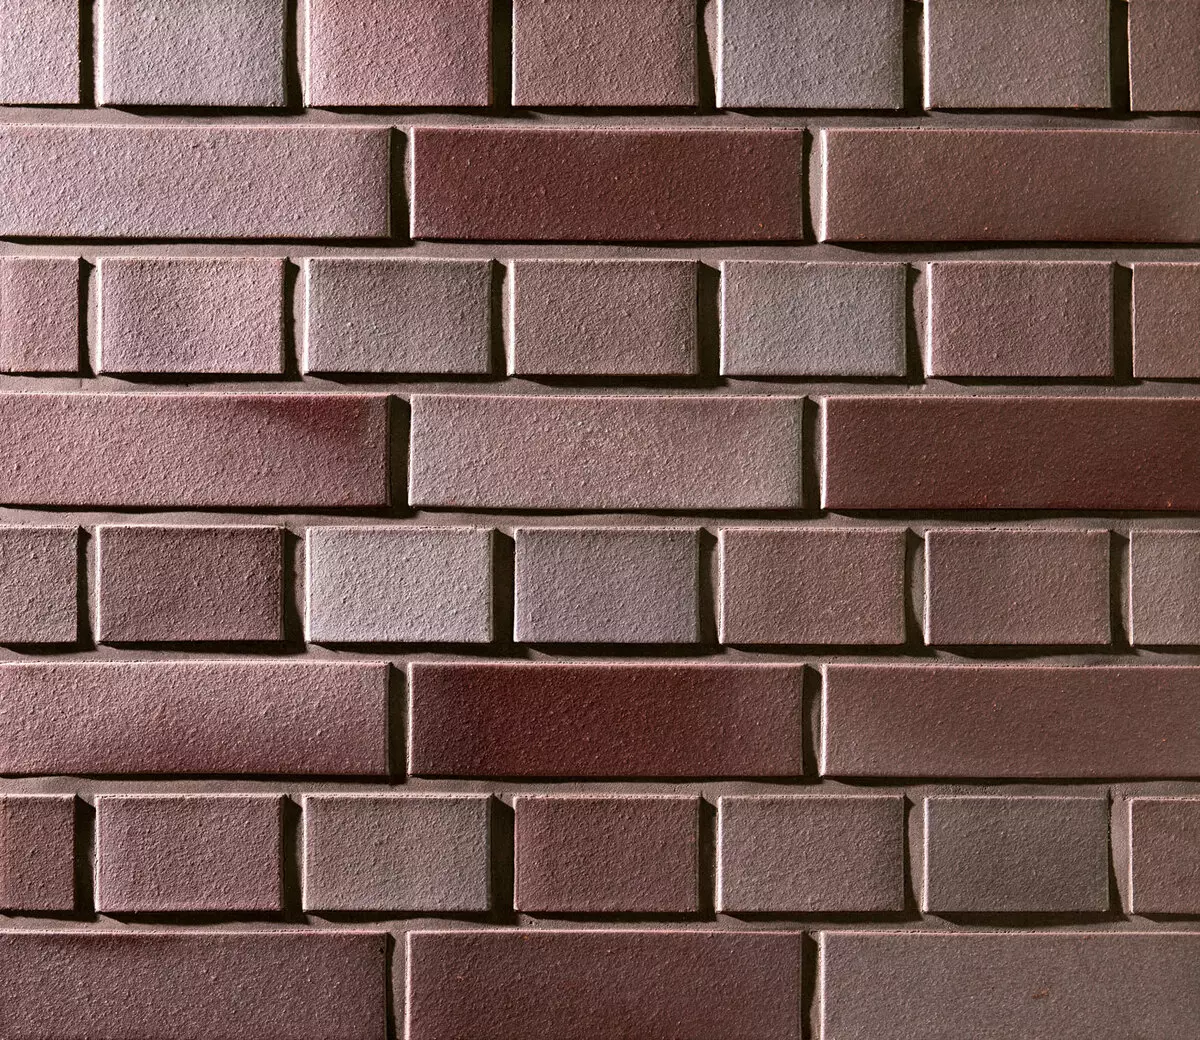 Application ng pandekorasyon brick sa loob